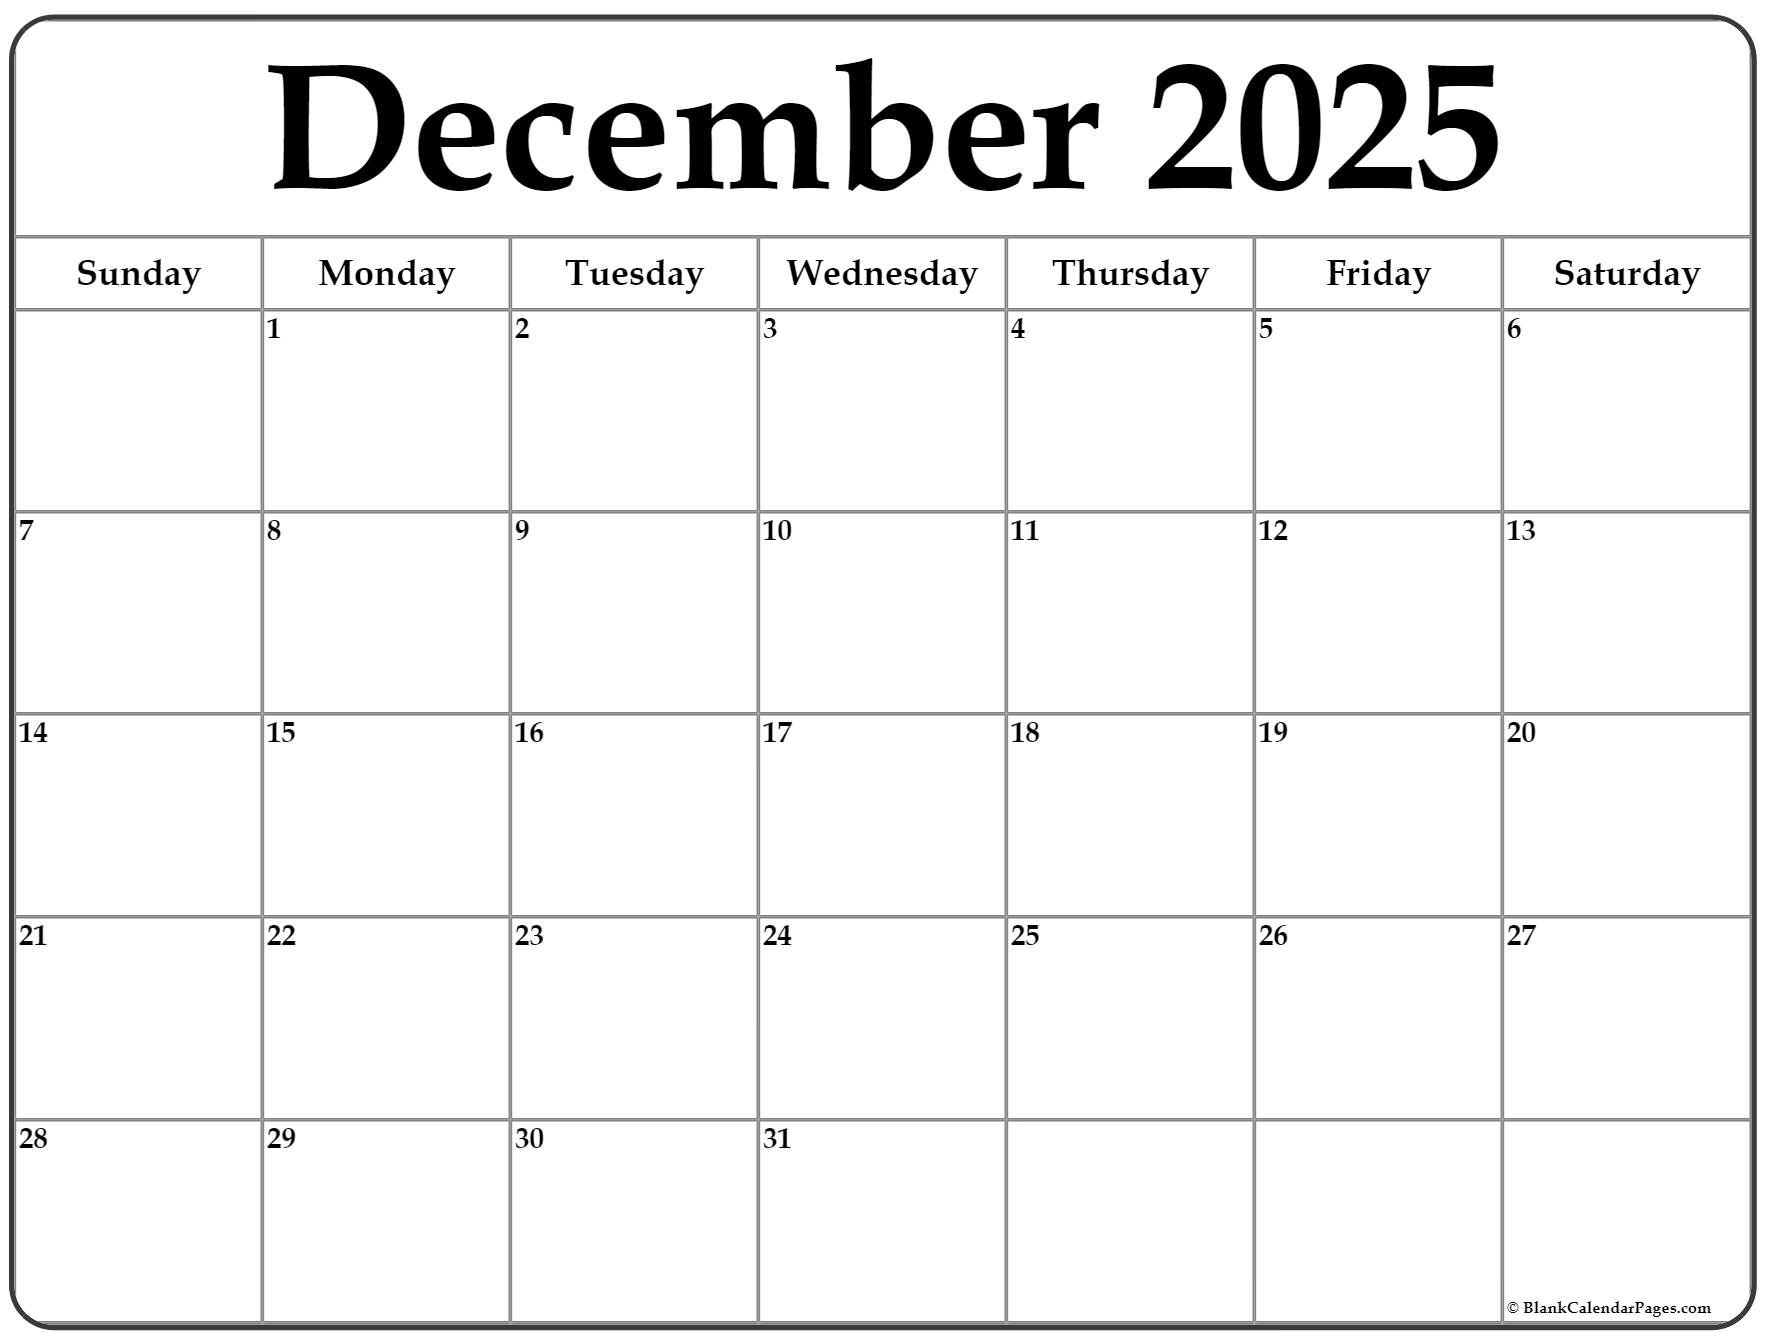 December 2025 Calendar Online 